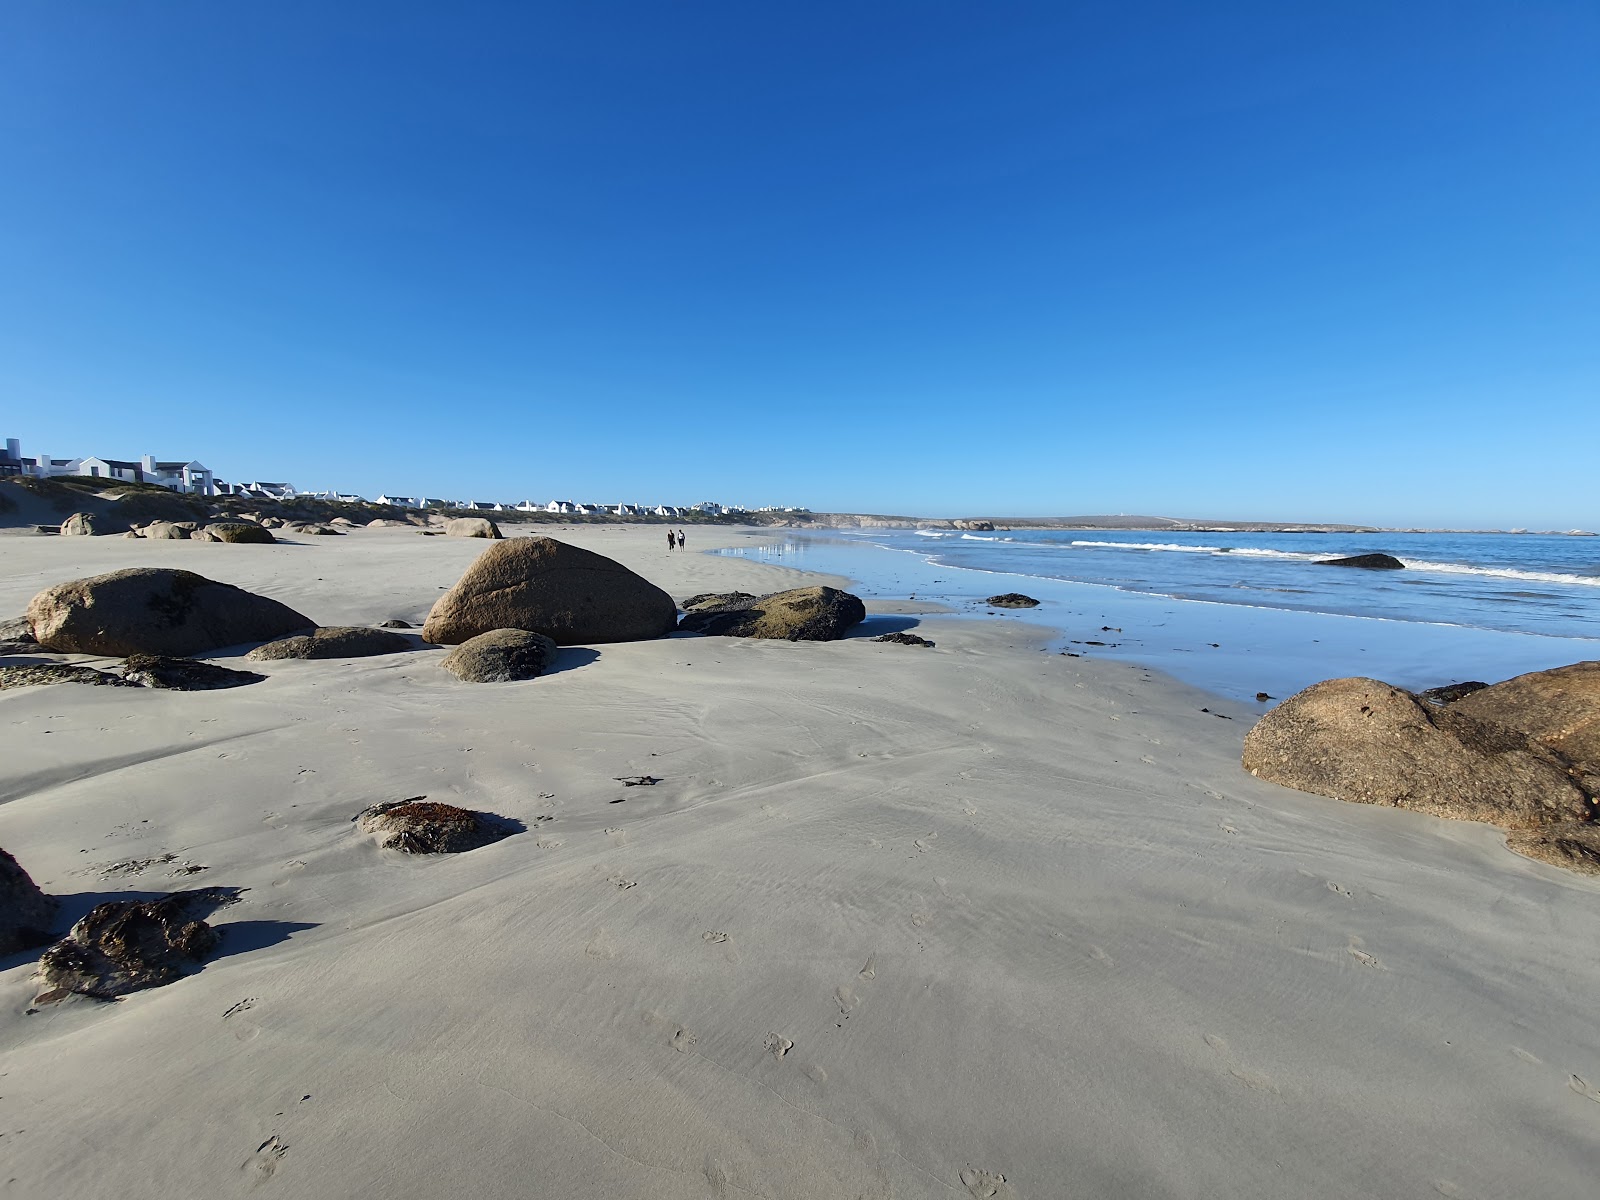 Paternoster beach II'in fotoğrafı parlak ince kum yüzey ile